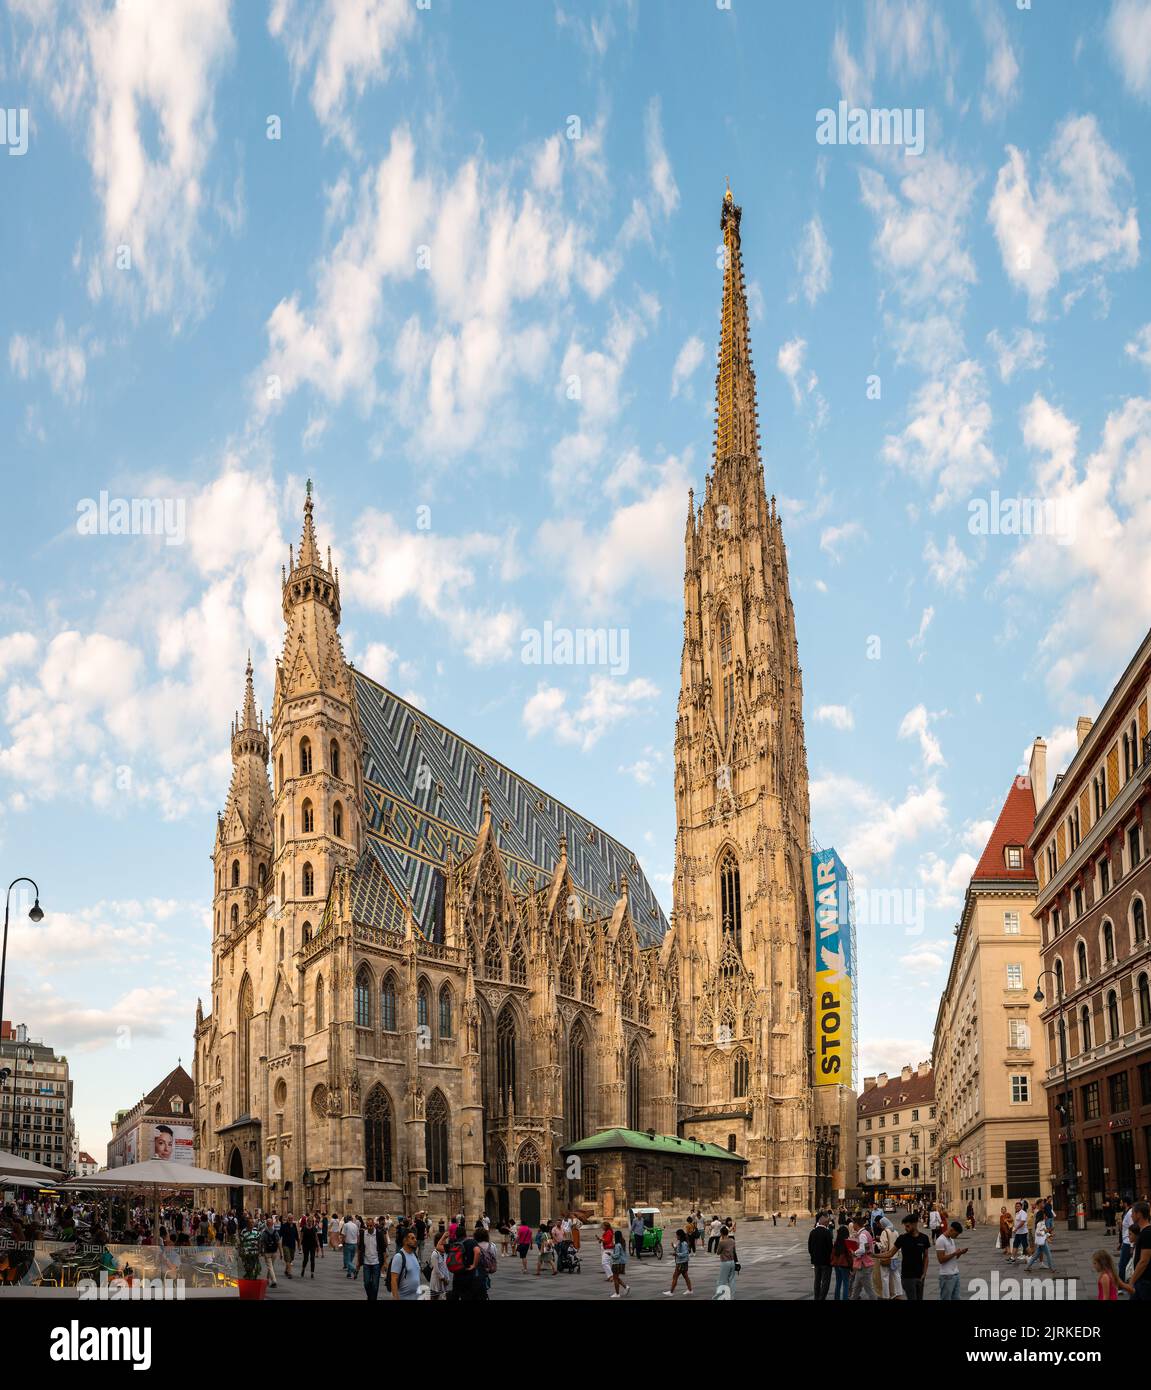 Viena, Austria - 11 de agosto de 2022: Stephansdom, la catedral de Viena que se eleva sobre el centro de Viena y la plaza principal de la ciudad Stephansplatz con siempre autobús Foto de stock